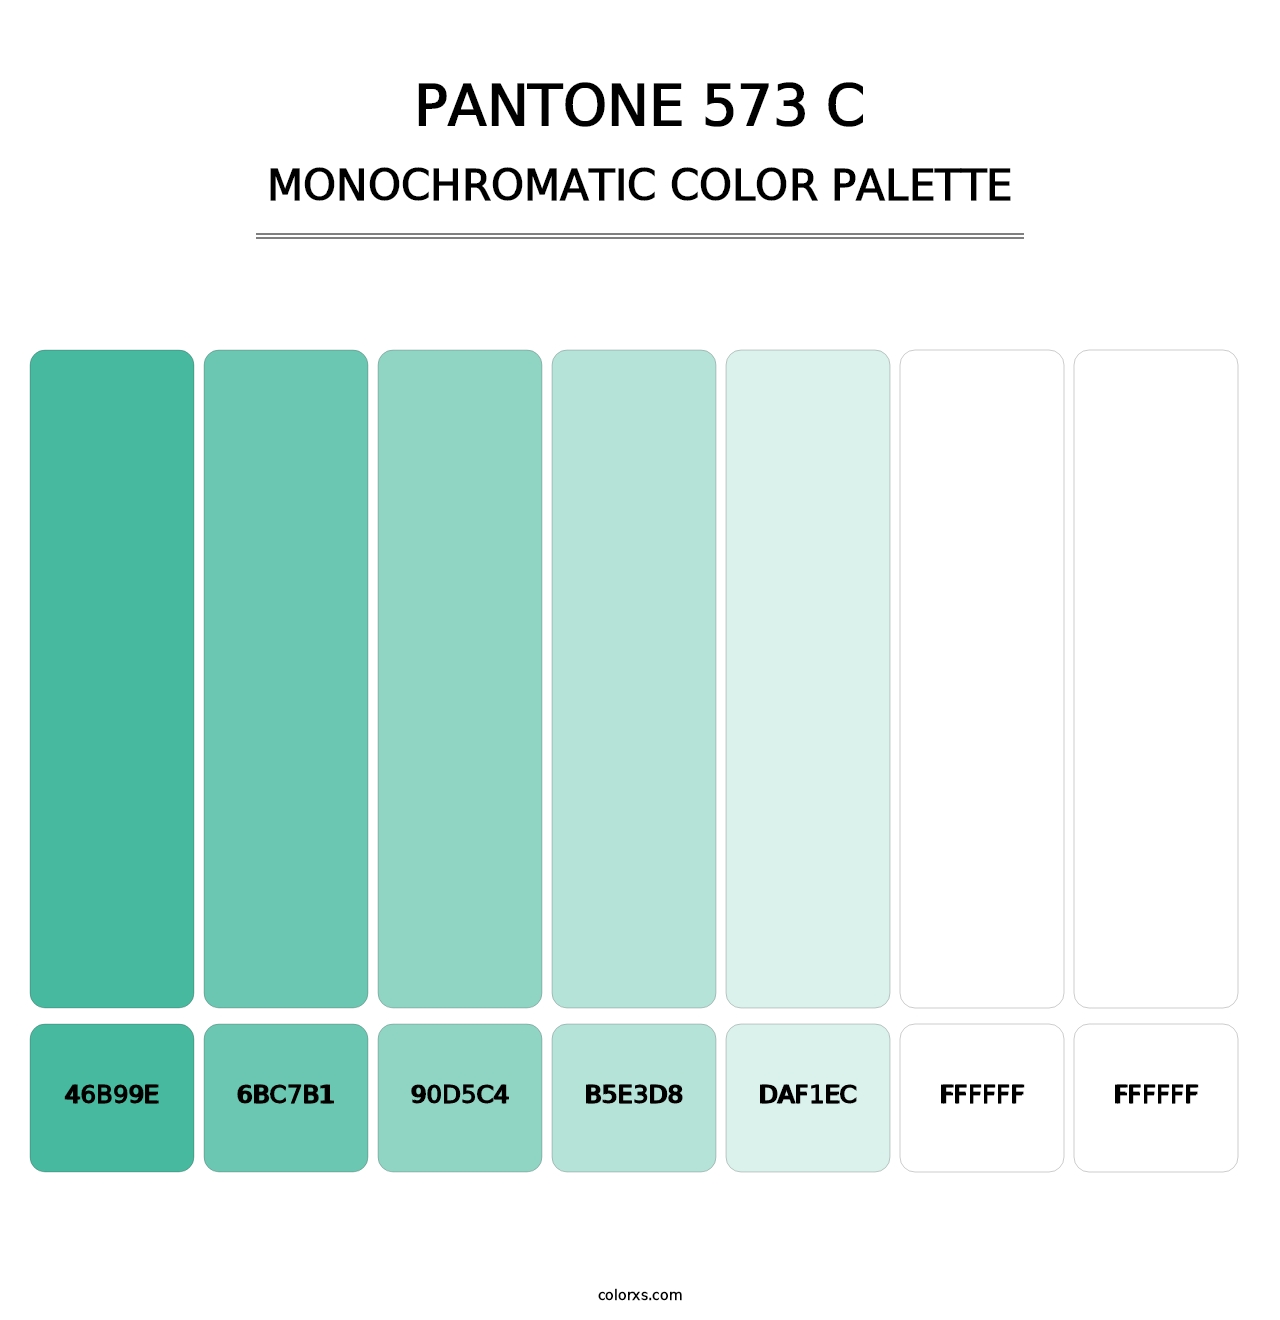 PANTONE 573 C - Monochromatic Color Palette